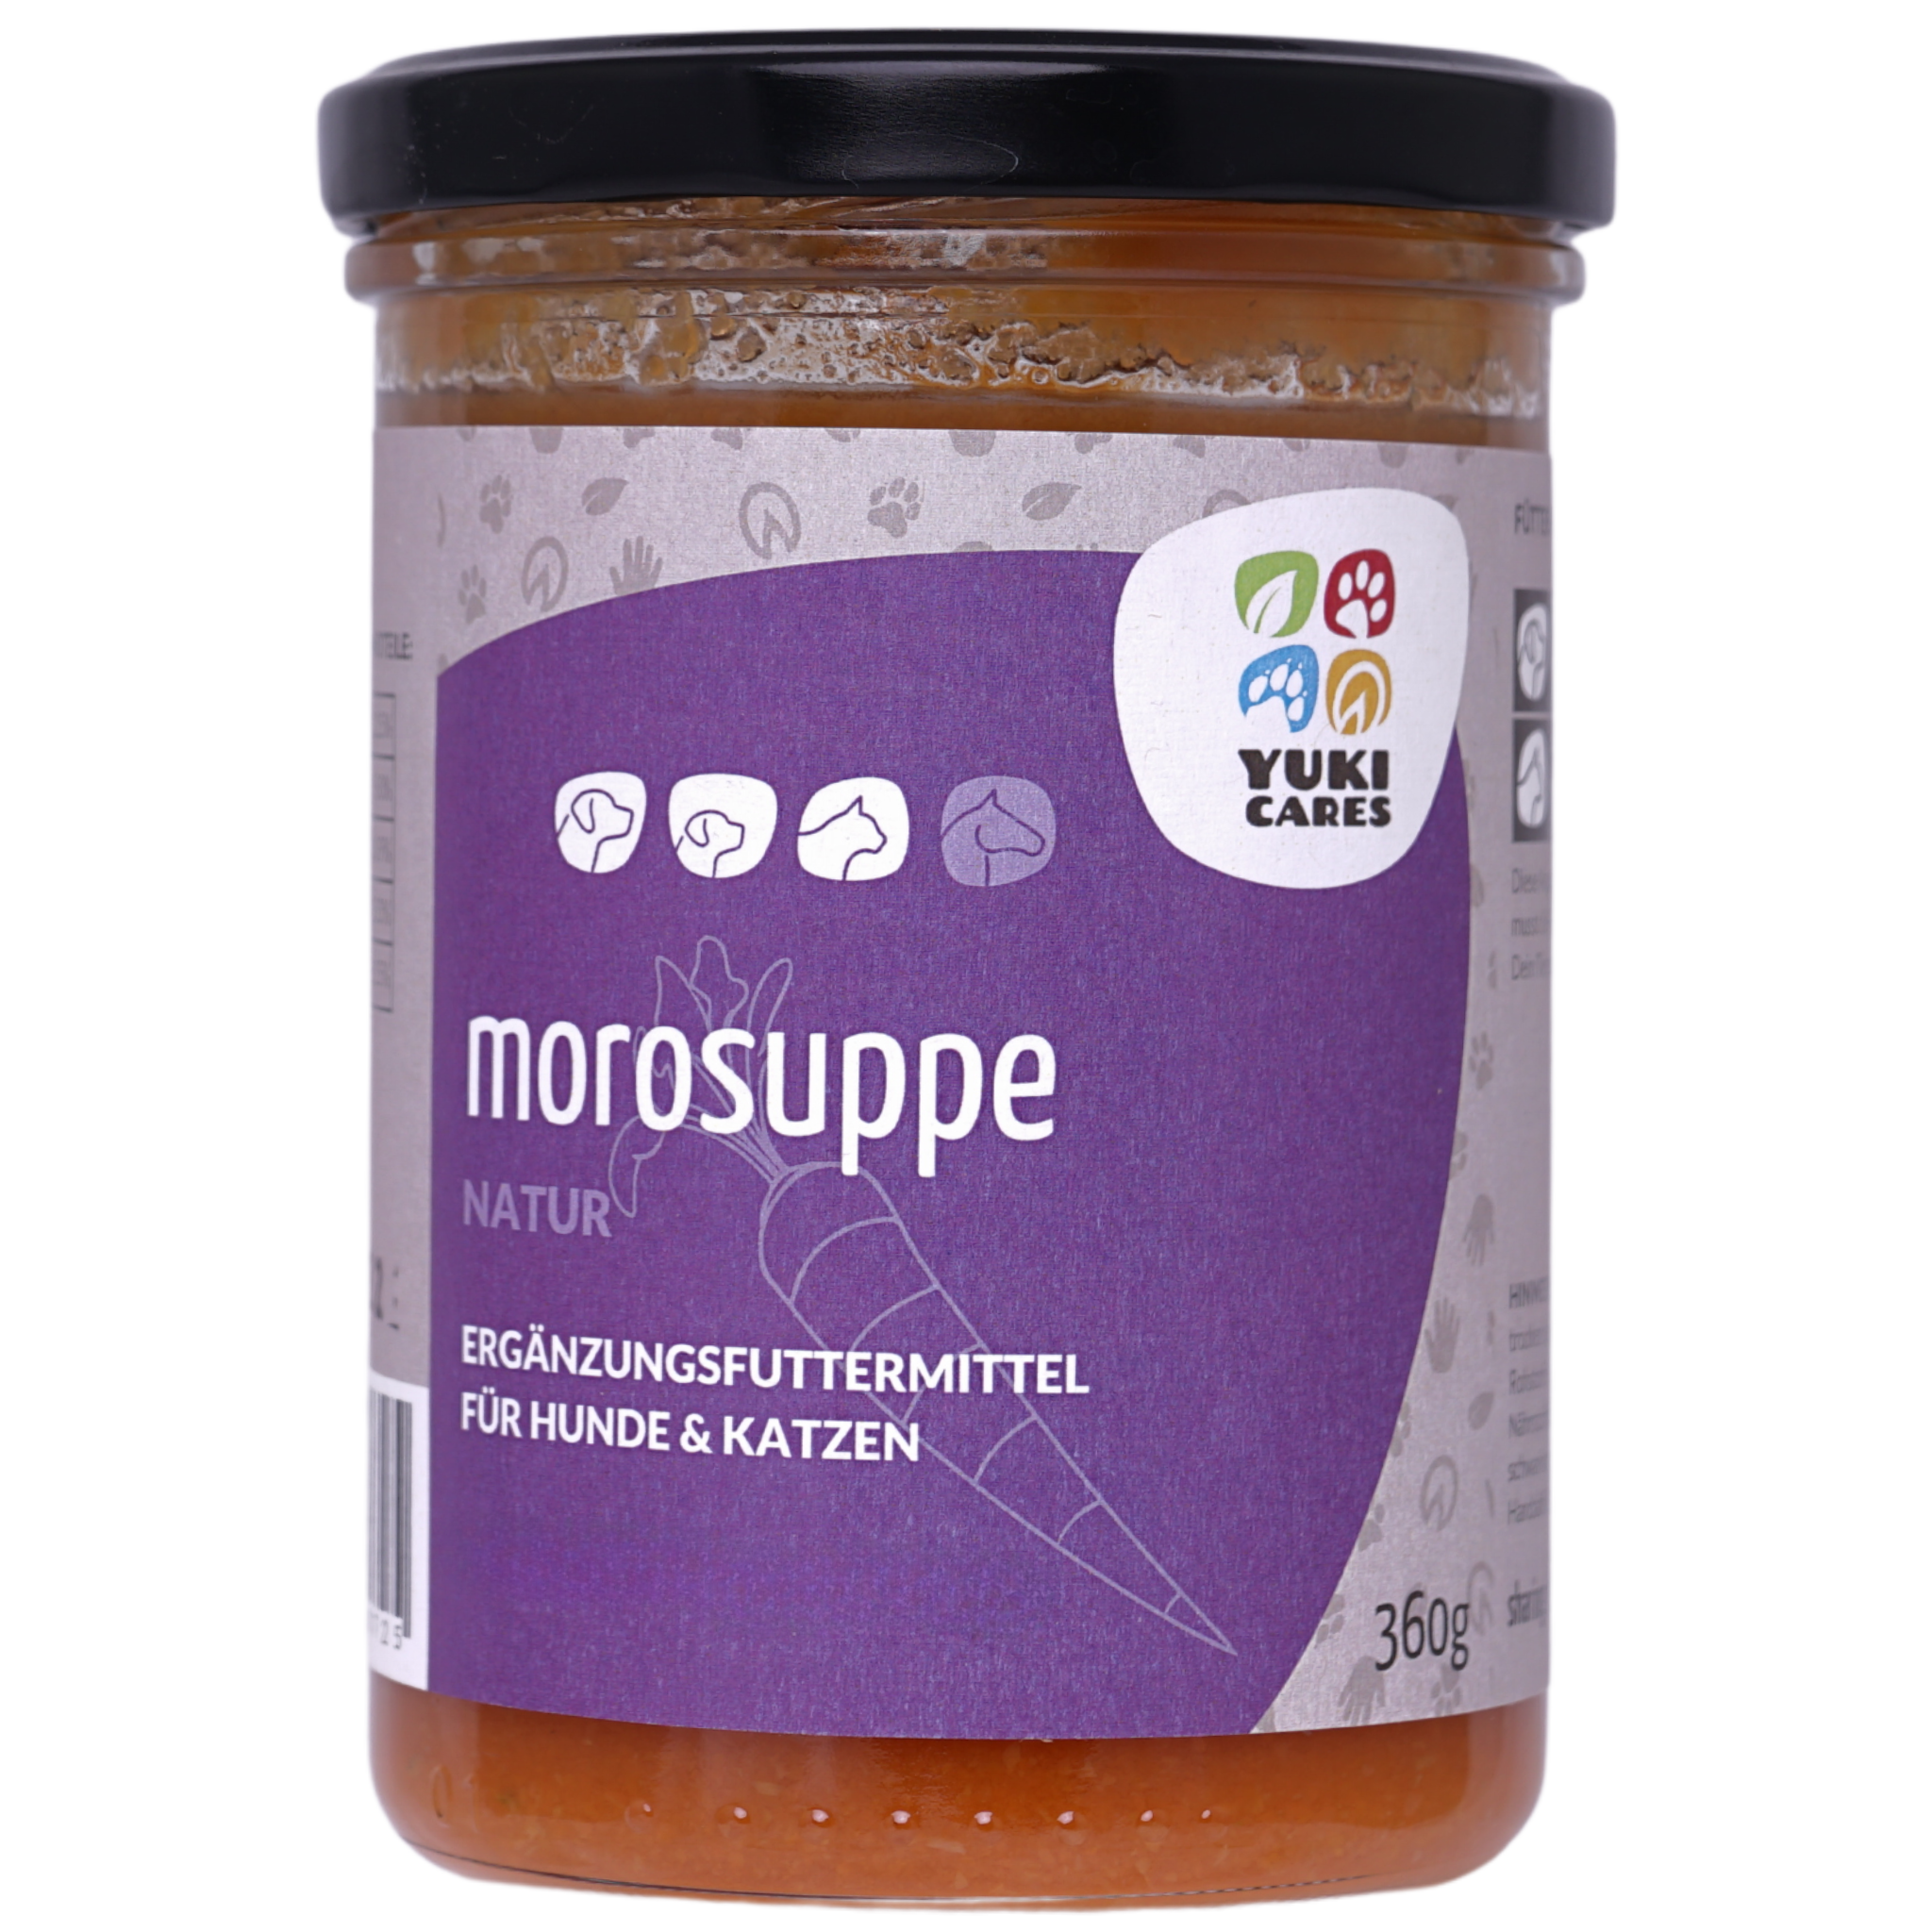 Morosuppe mit Etikett im Schraubglas mit schwarzem Deckel